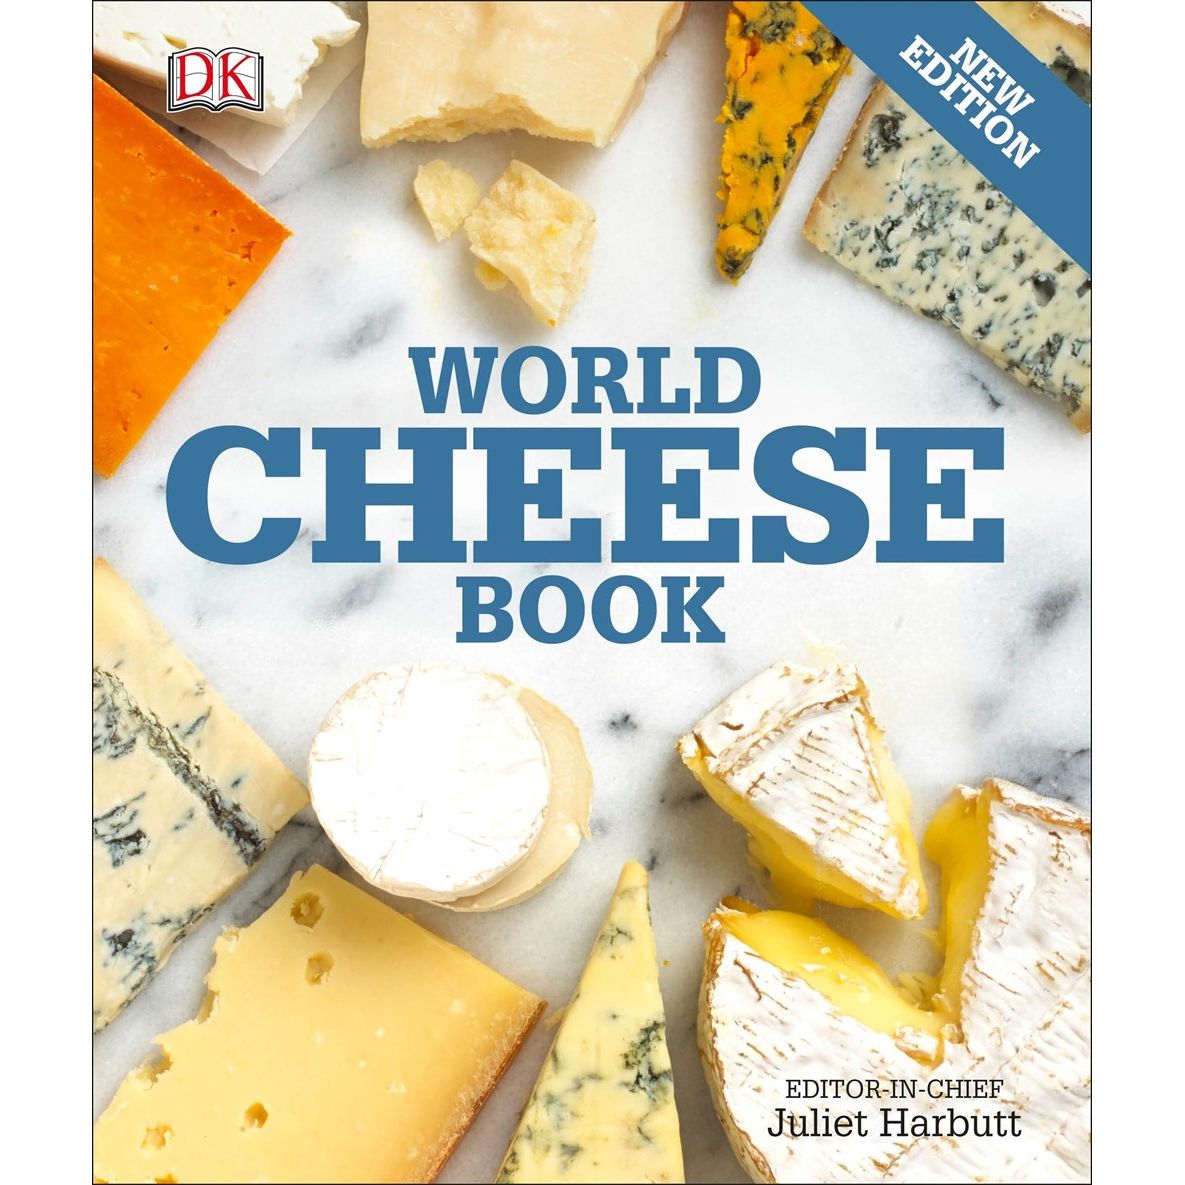 World Cheese Book (Juliet Harbutt)